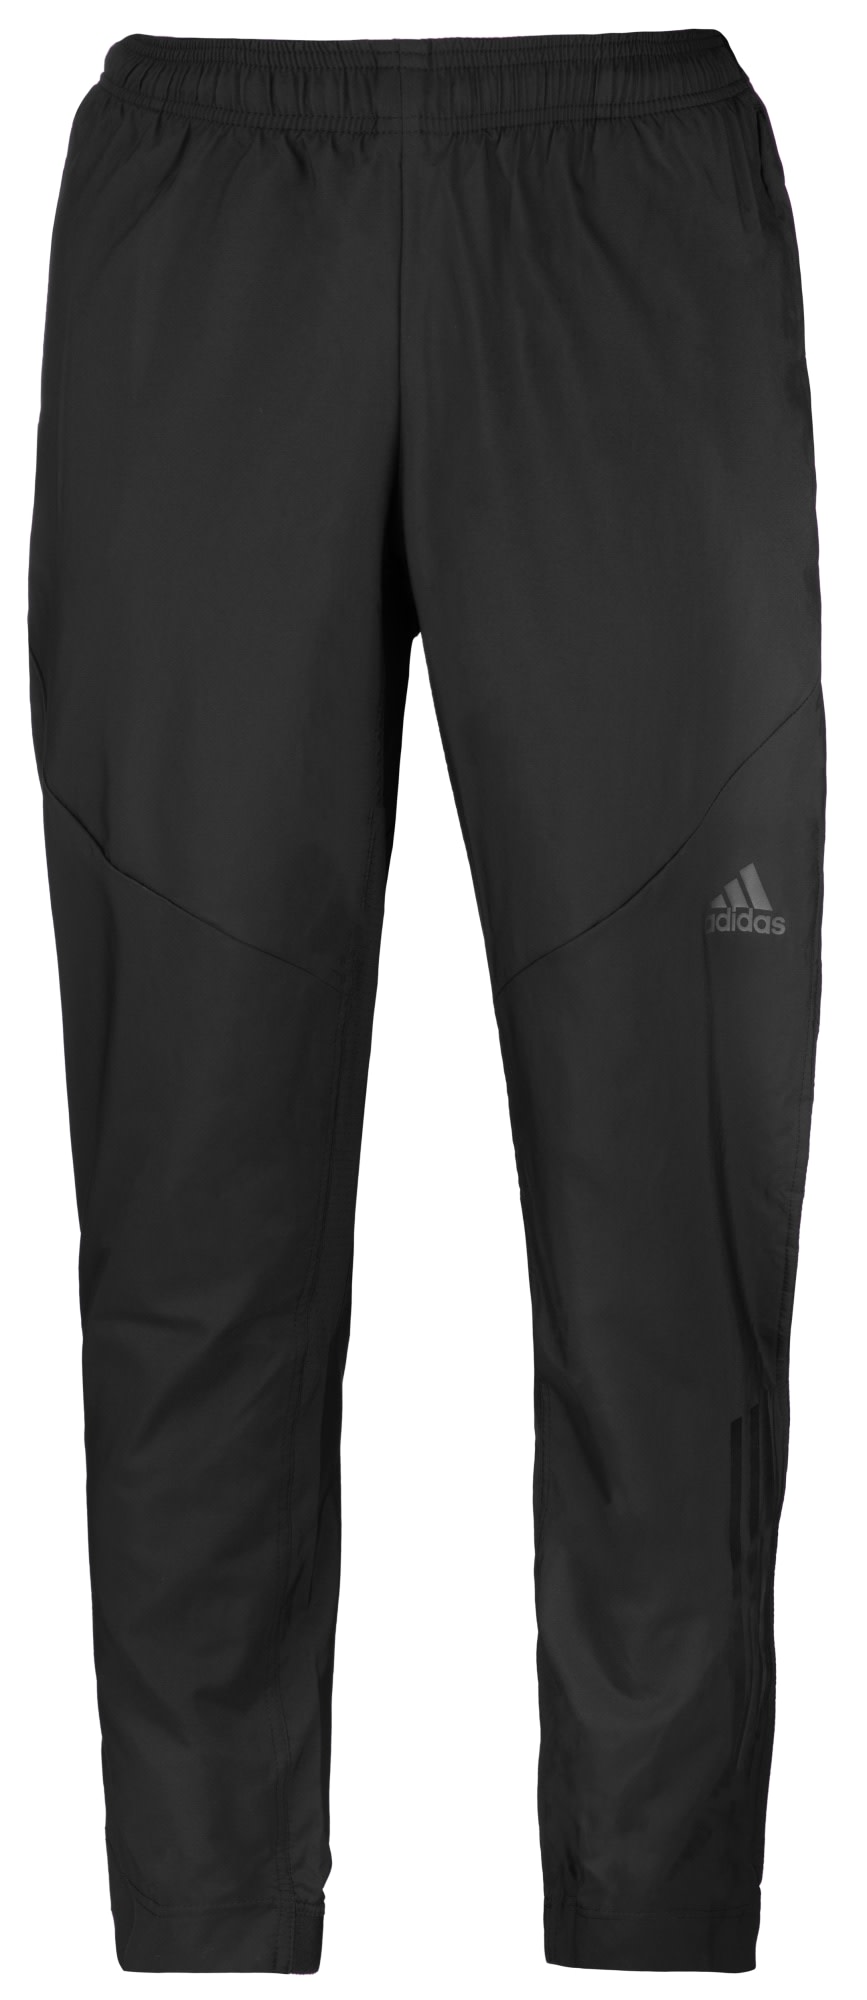 Adidas Climacool Workout miesten housut | Karkkainen.com verkkokauppa